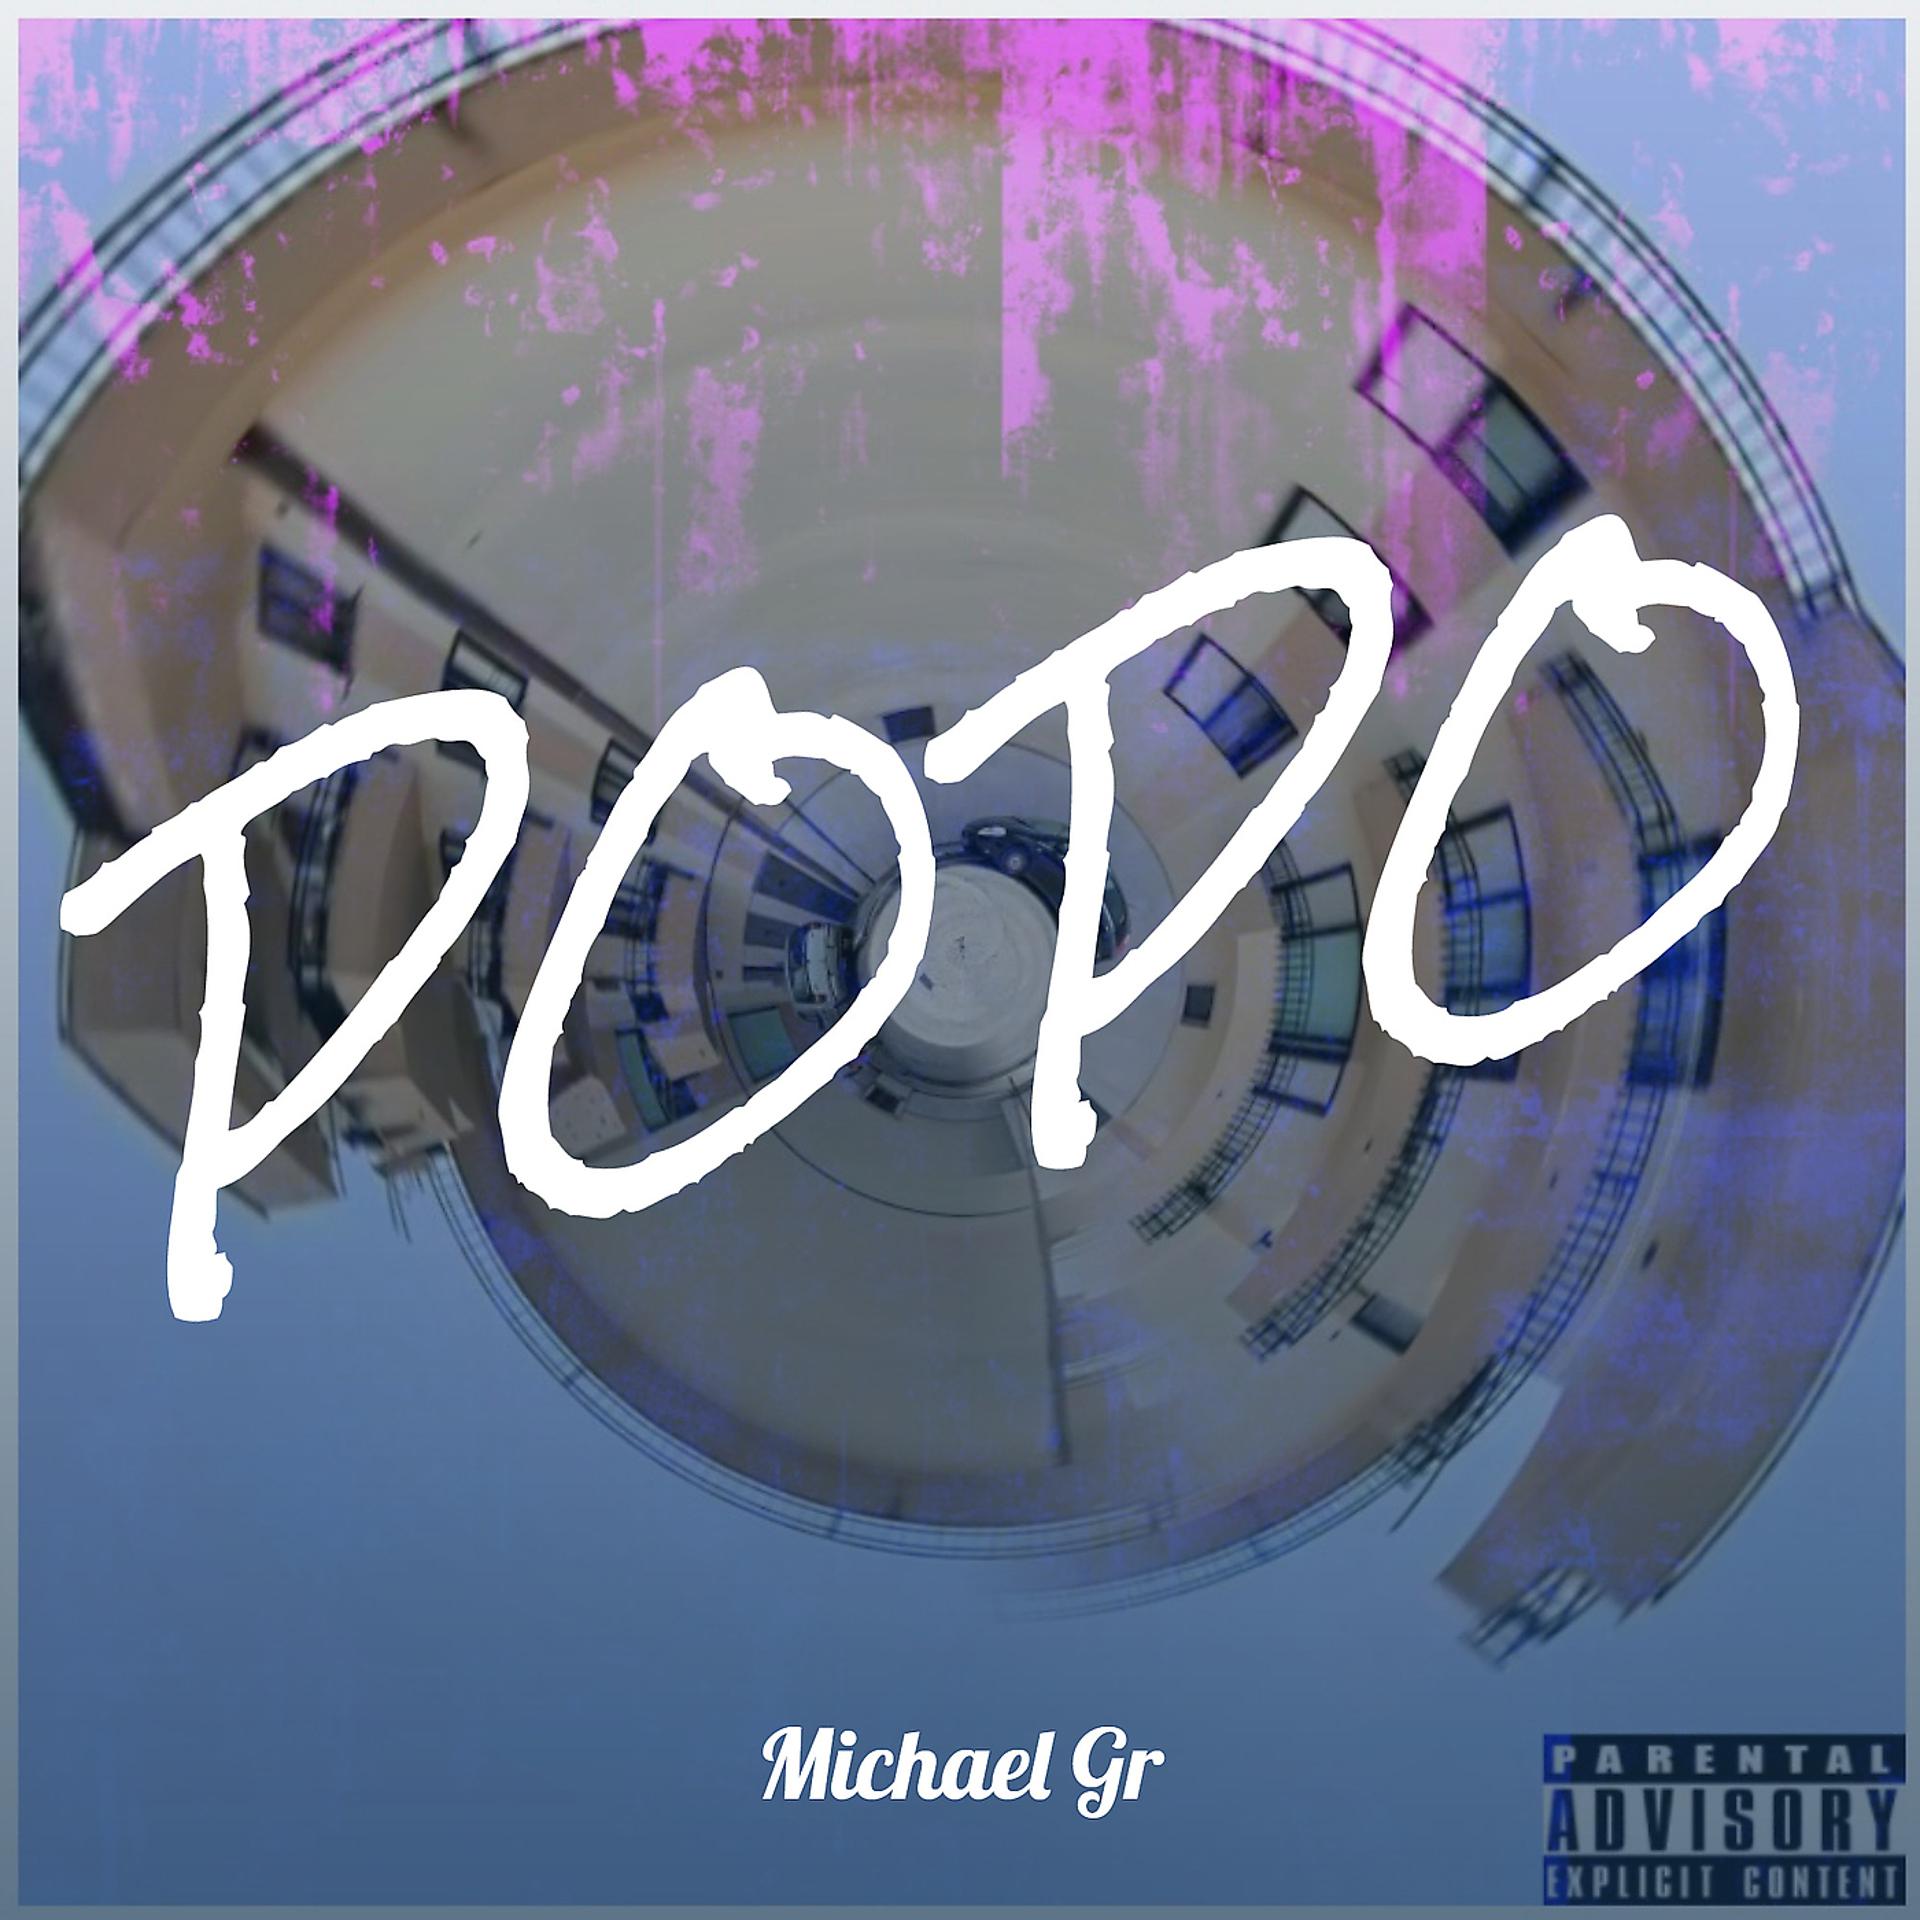 Постер альбома Popo